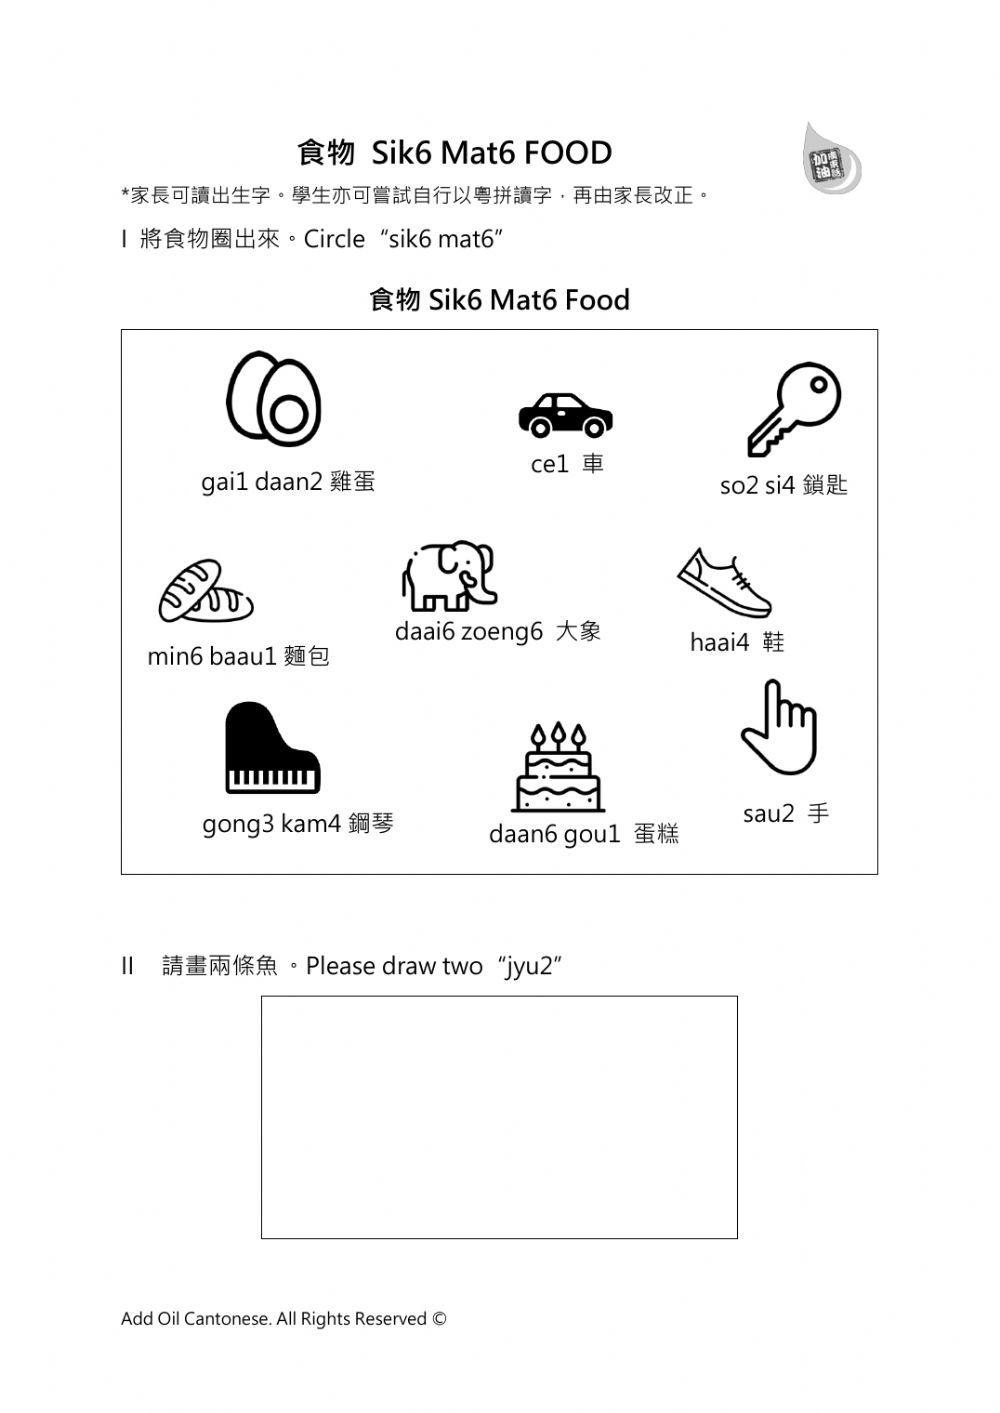 Food in Cantonese Sik6 mat6